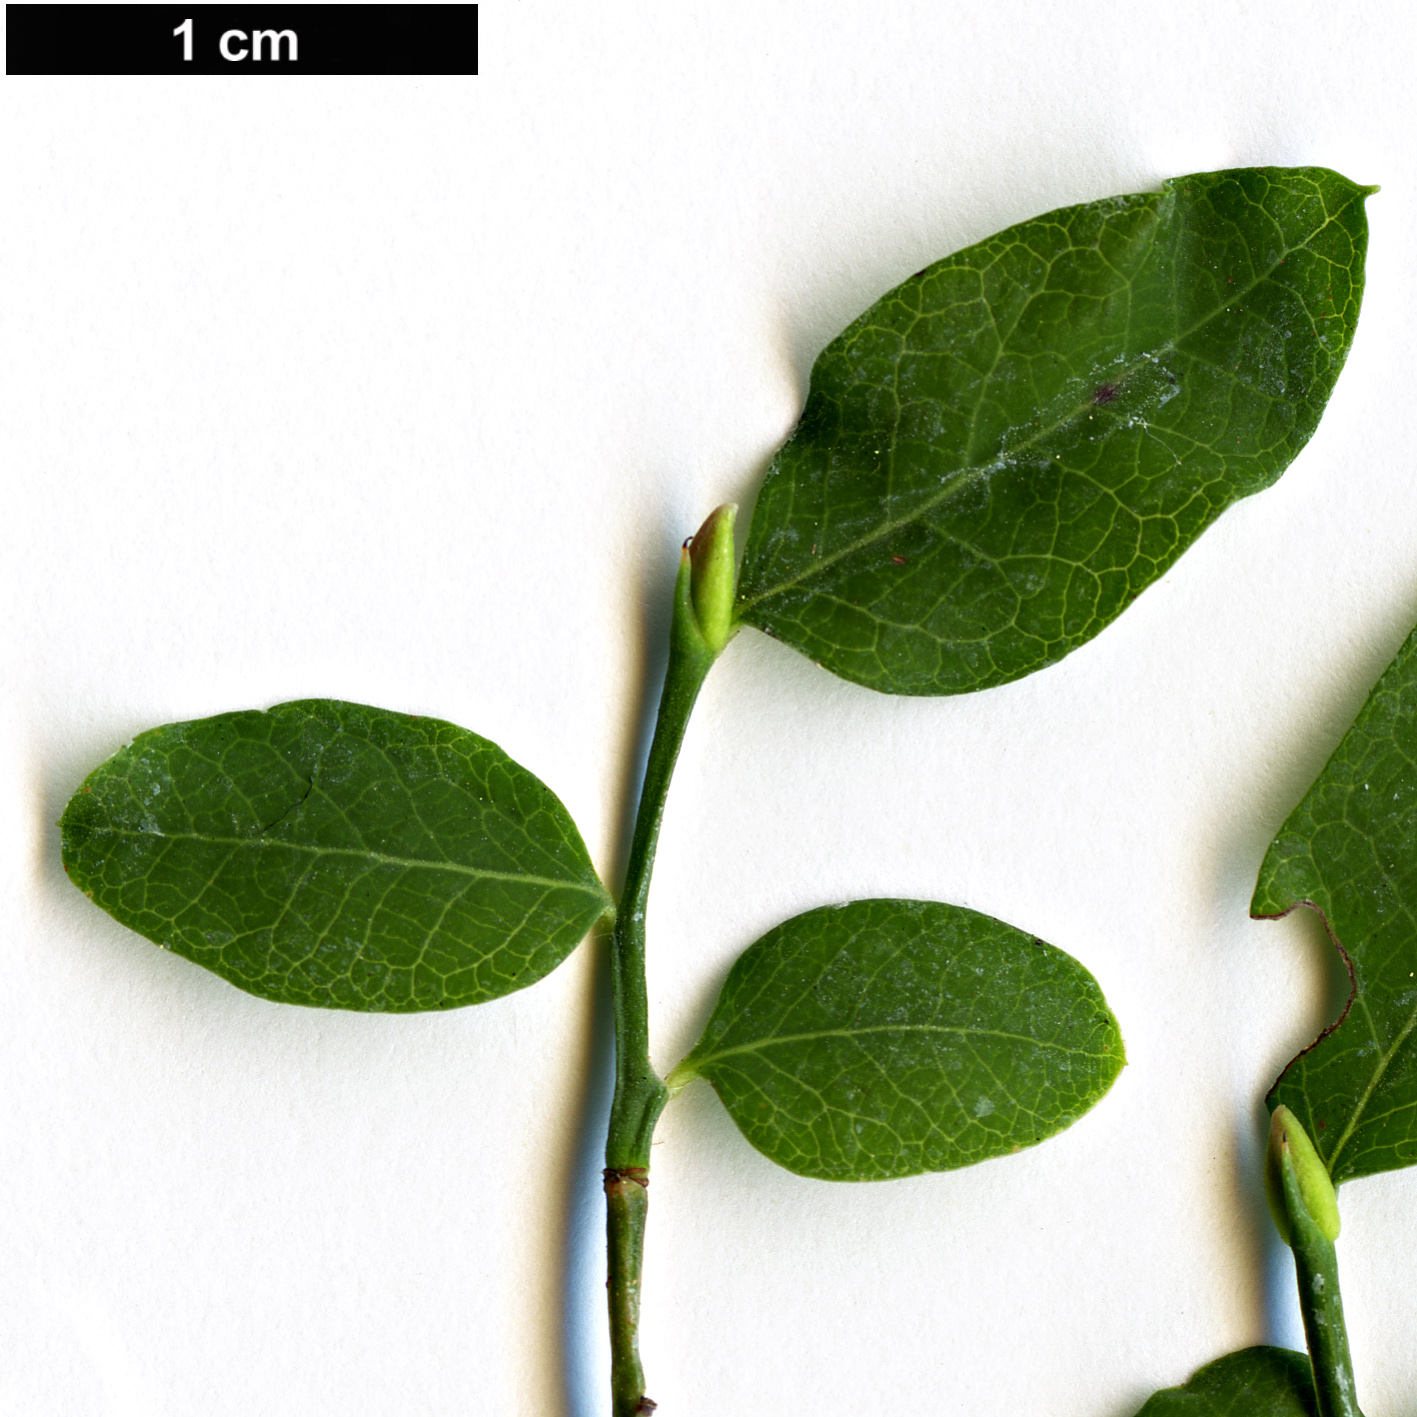 High resolution image: Family: Ericaceae - Genus: Vaccinium - Taxon: parvifolium